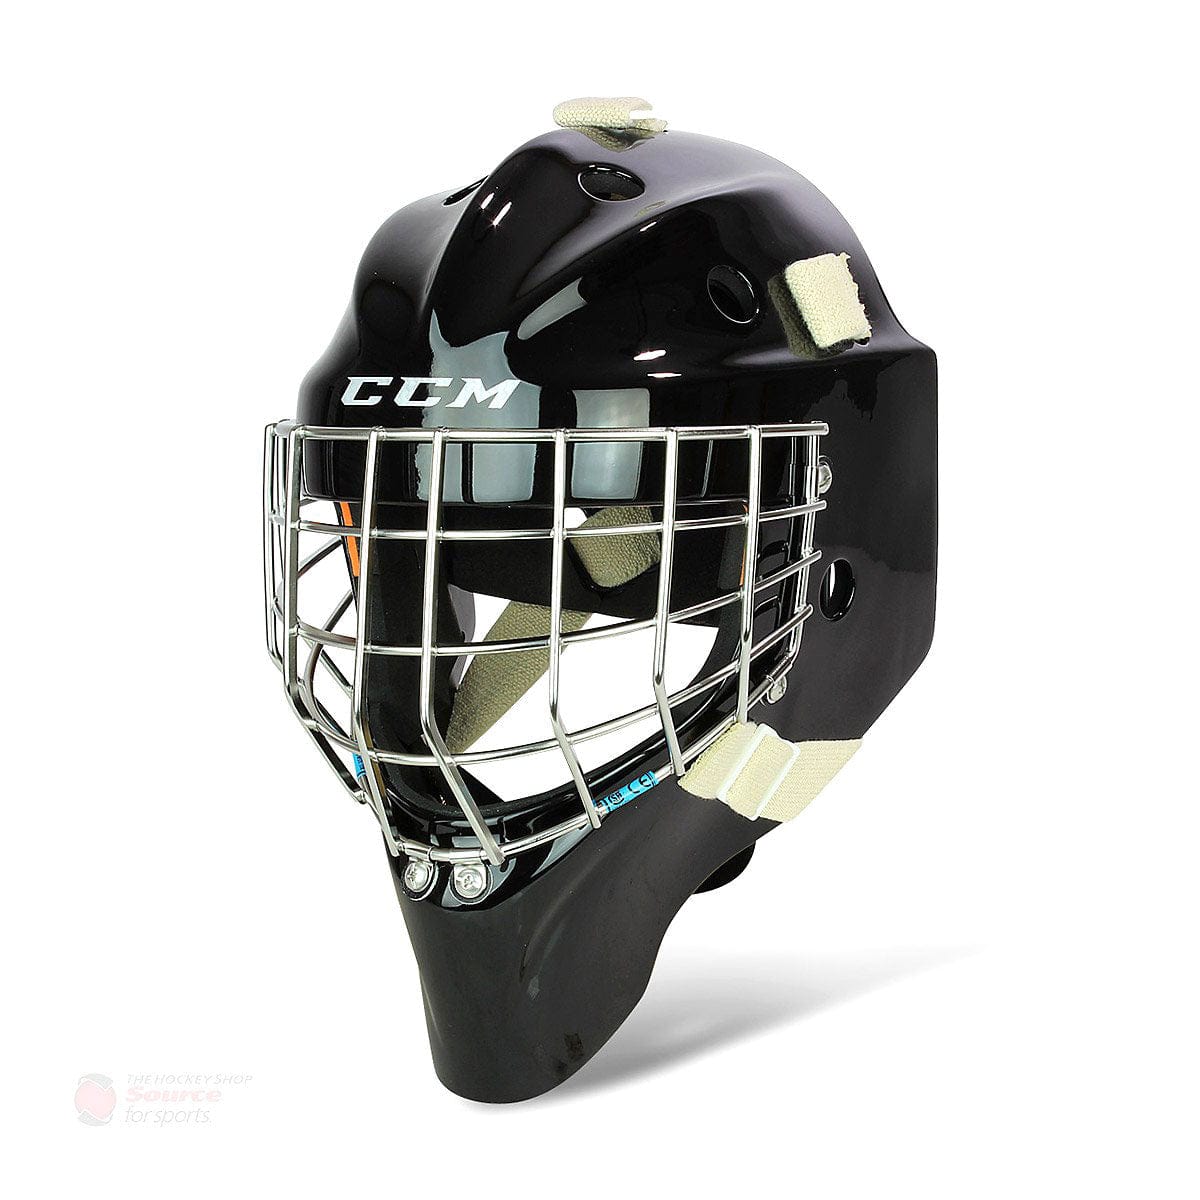 CCM Pro Senior Goalie Mask